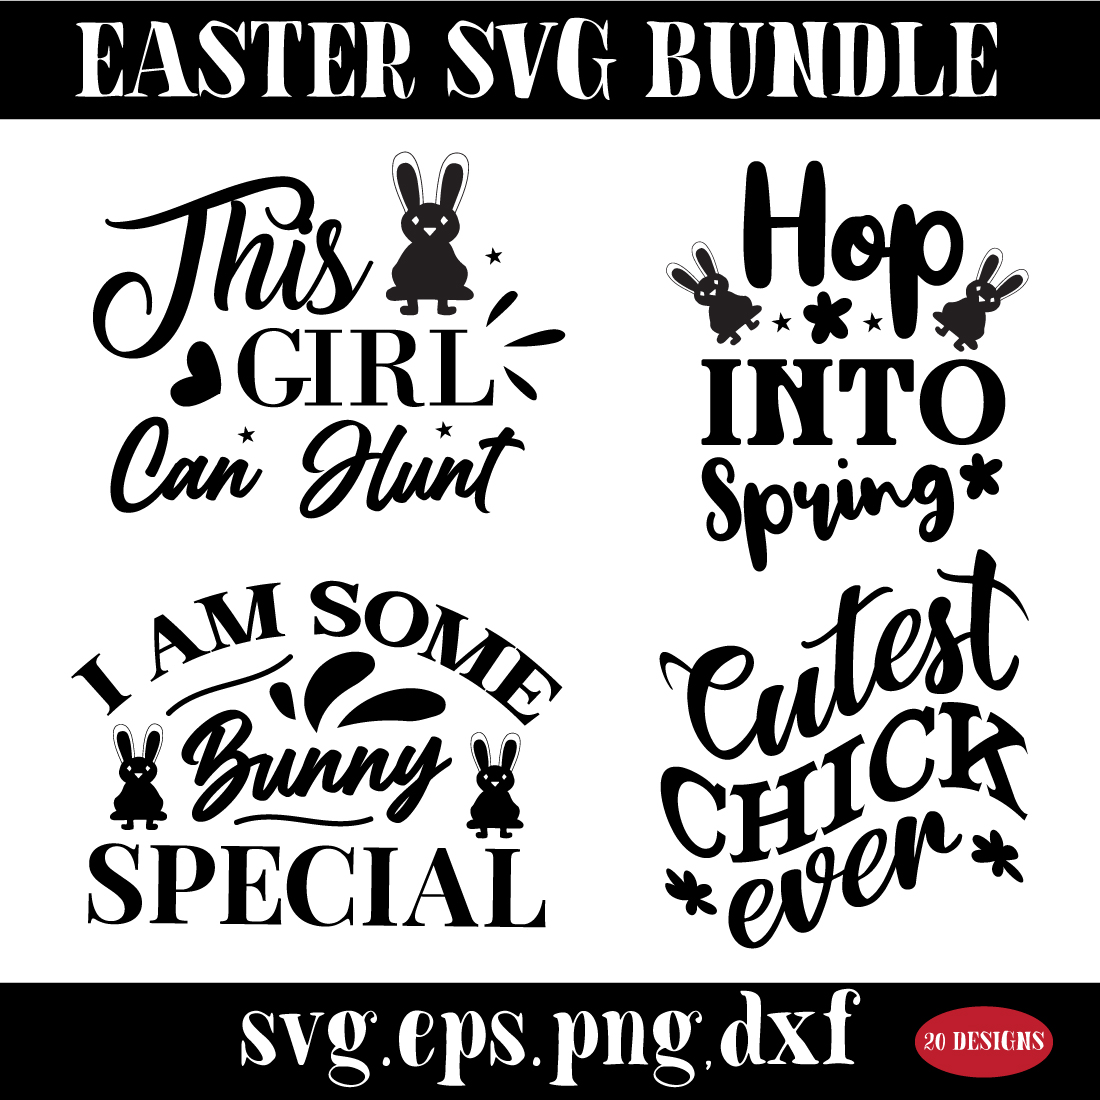 Easter SVG bundle preview image.